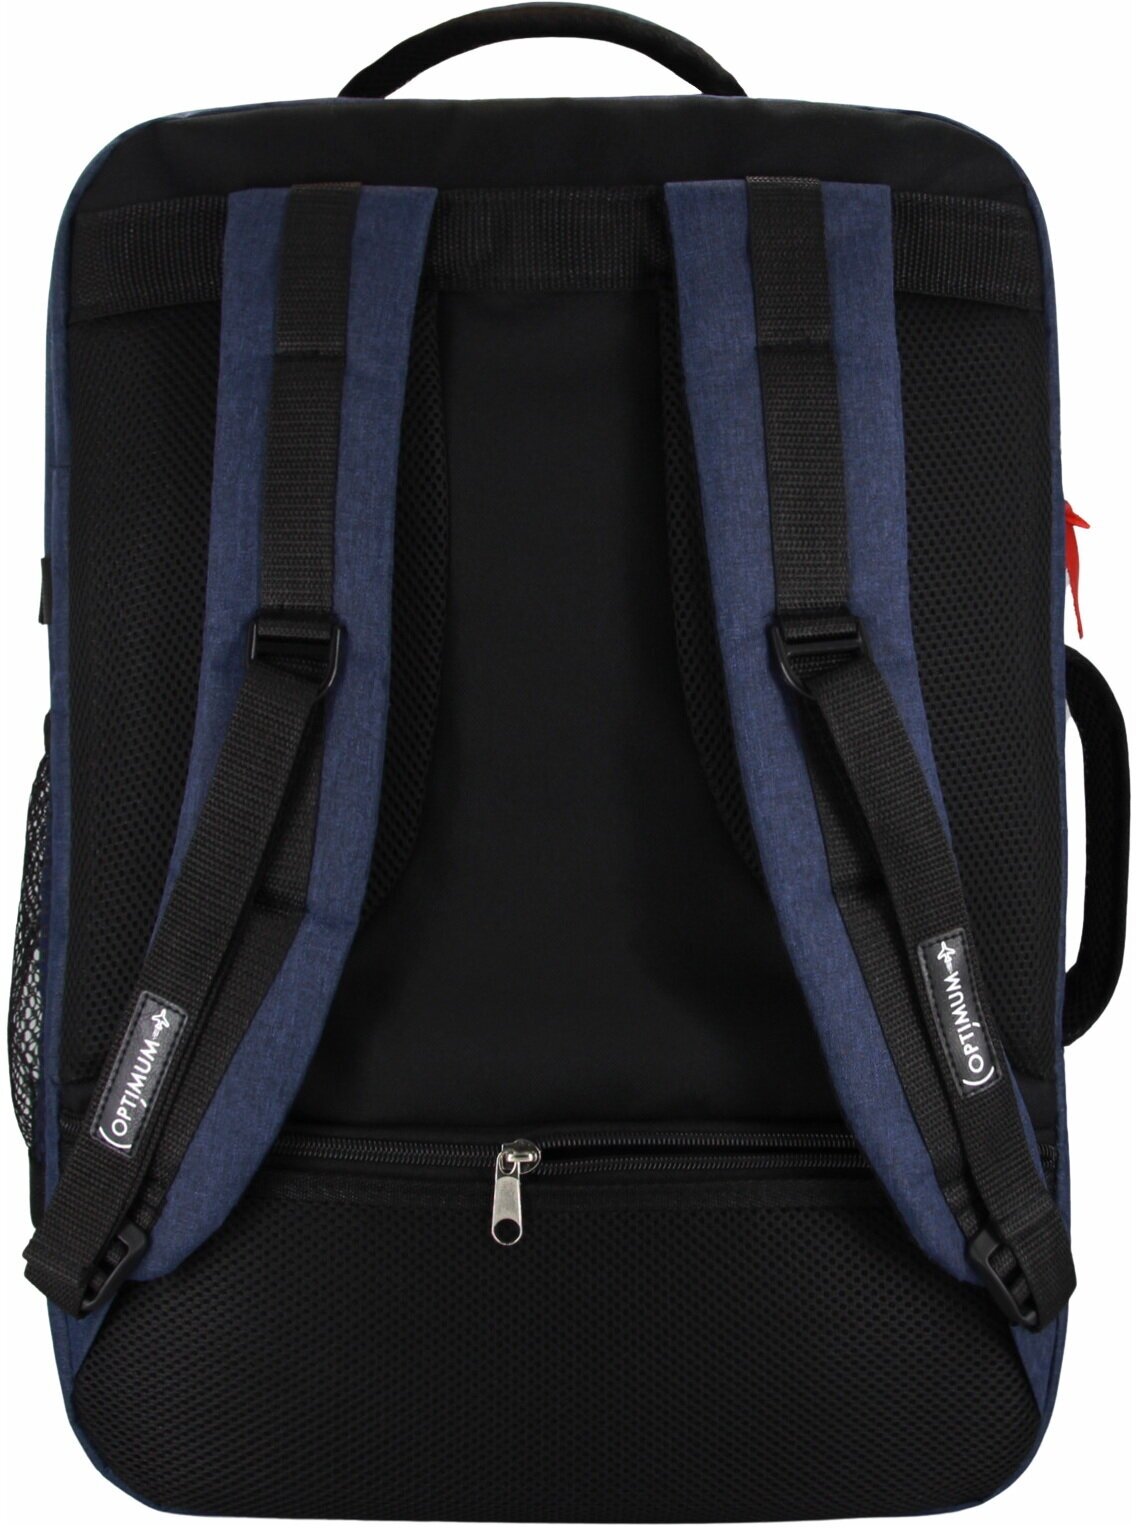 Сумка дорожная сумка-рюкзак Optimum, 44 л, 55х40х20 см, ручная кладь, отделение для ноутбука, фиксирующие ремни, водонепроницаемая, синий - фотография № 14